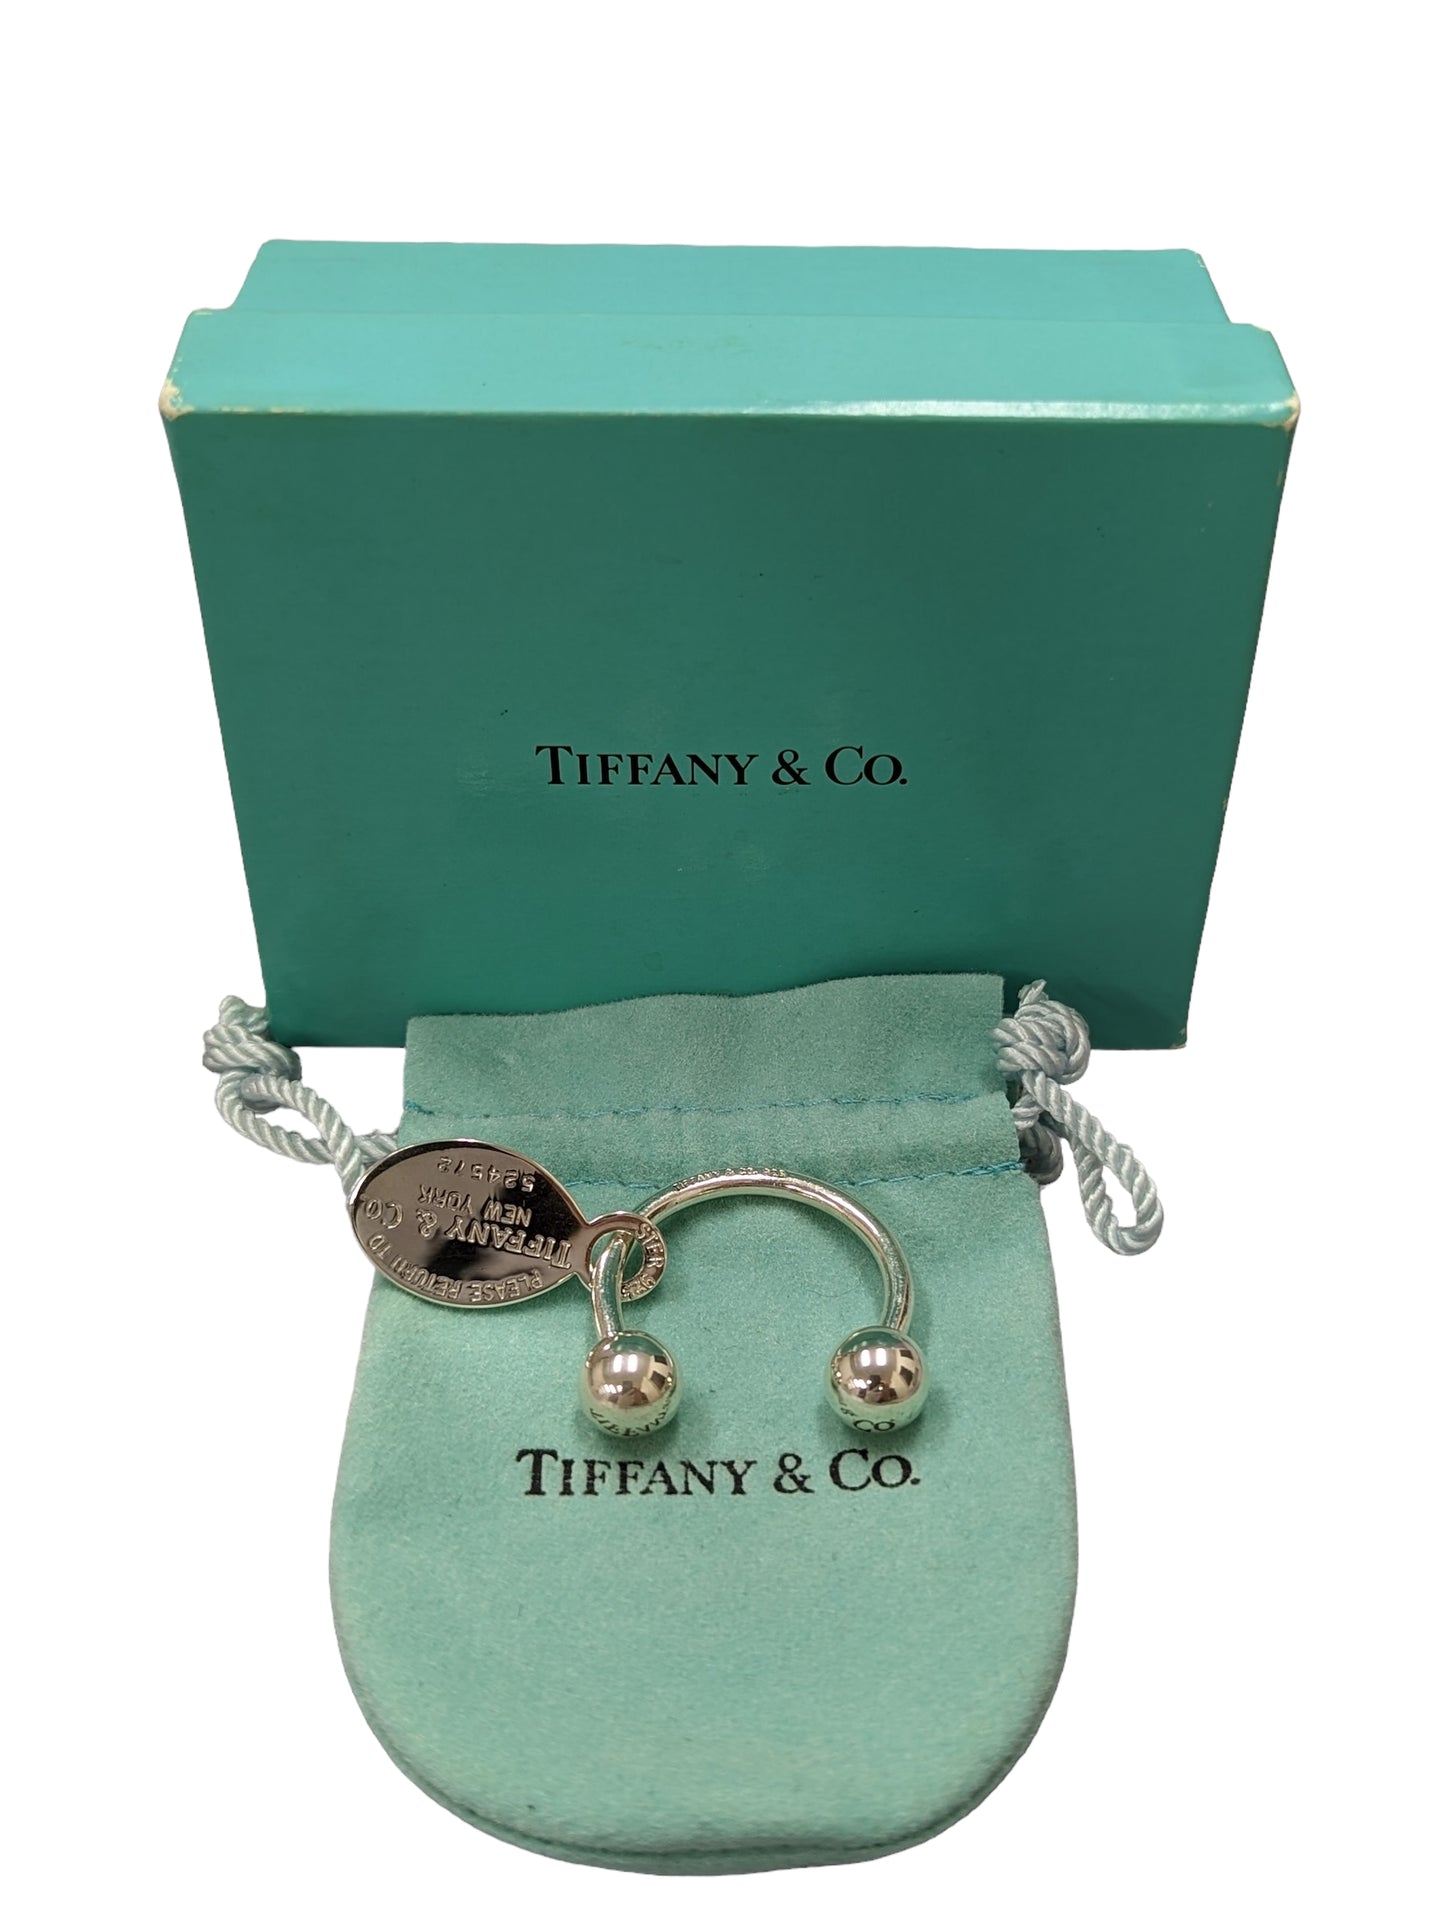 Tiffany key ring